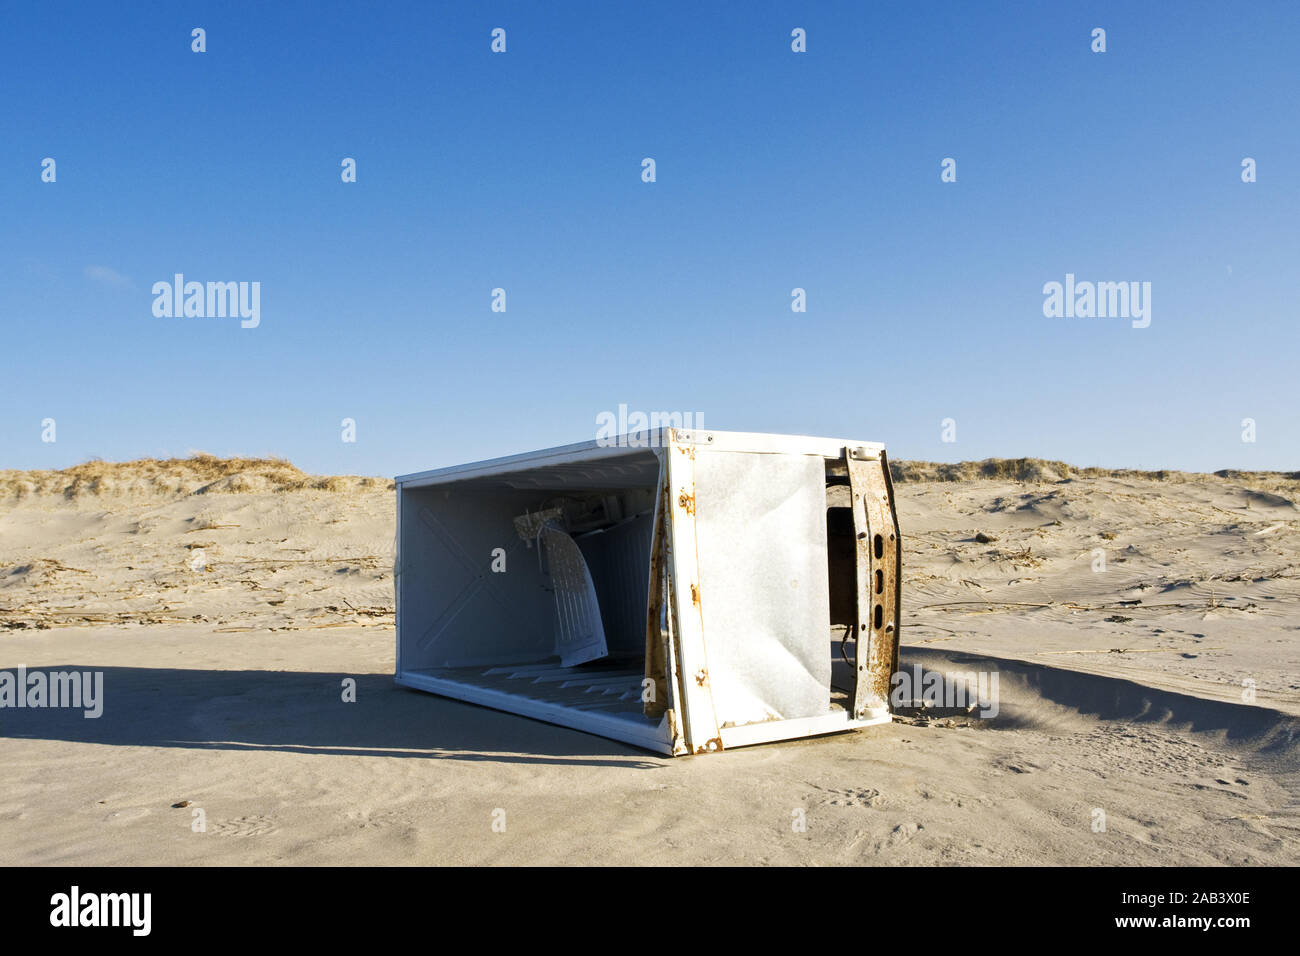 Modifier K'hlschrank une einem Strand an der Nordsee |vieux réfrigérateur sur une plage de la mer du Nord| Banque D'Images